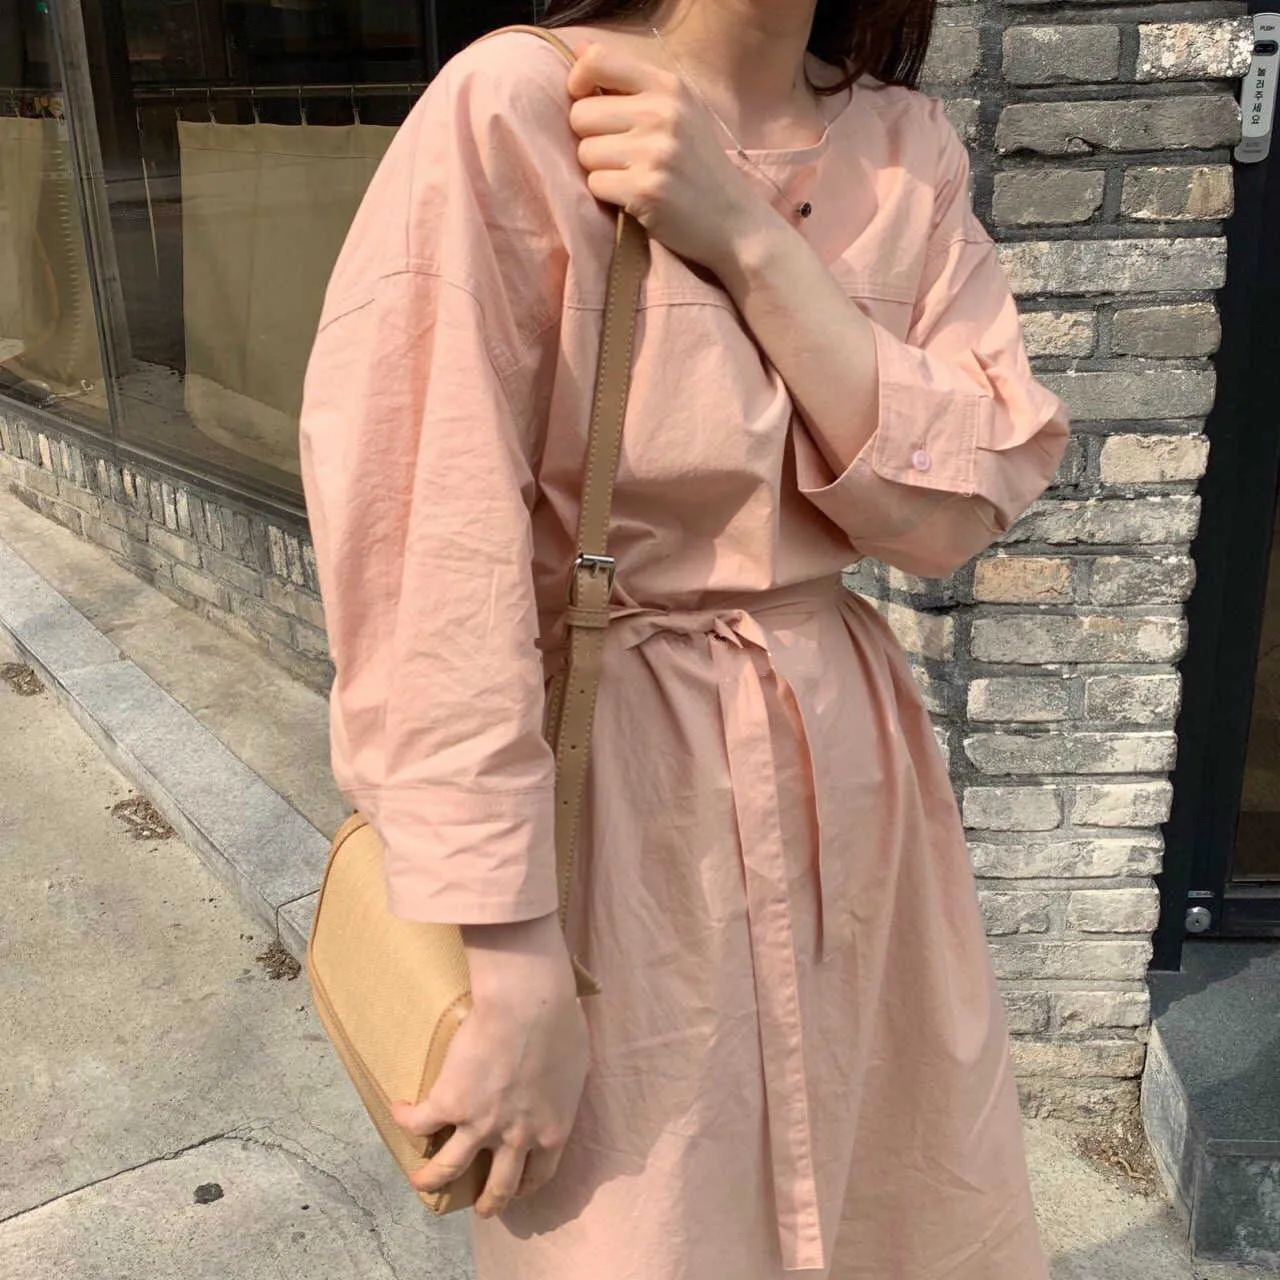 Kleider Frauen Chic Koreanische Sanfte Lose Rosa O Neck Puff Langarm Taille Bandage Shirts Kleid Maxi Vestido De Mujer mode 210610